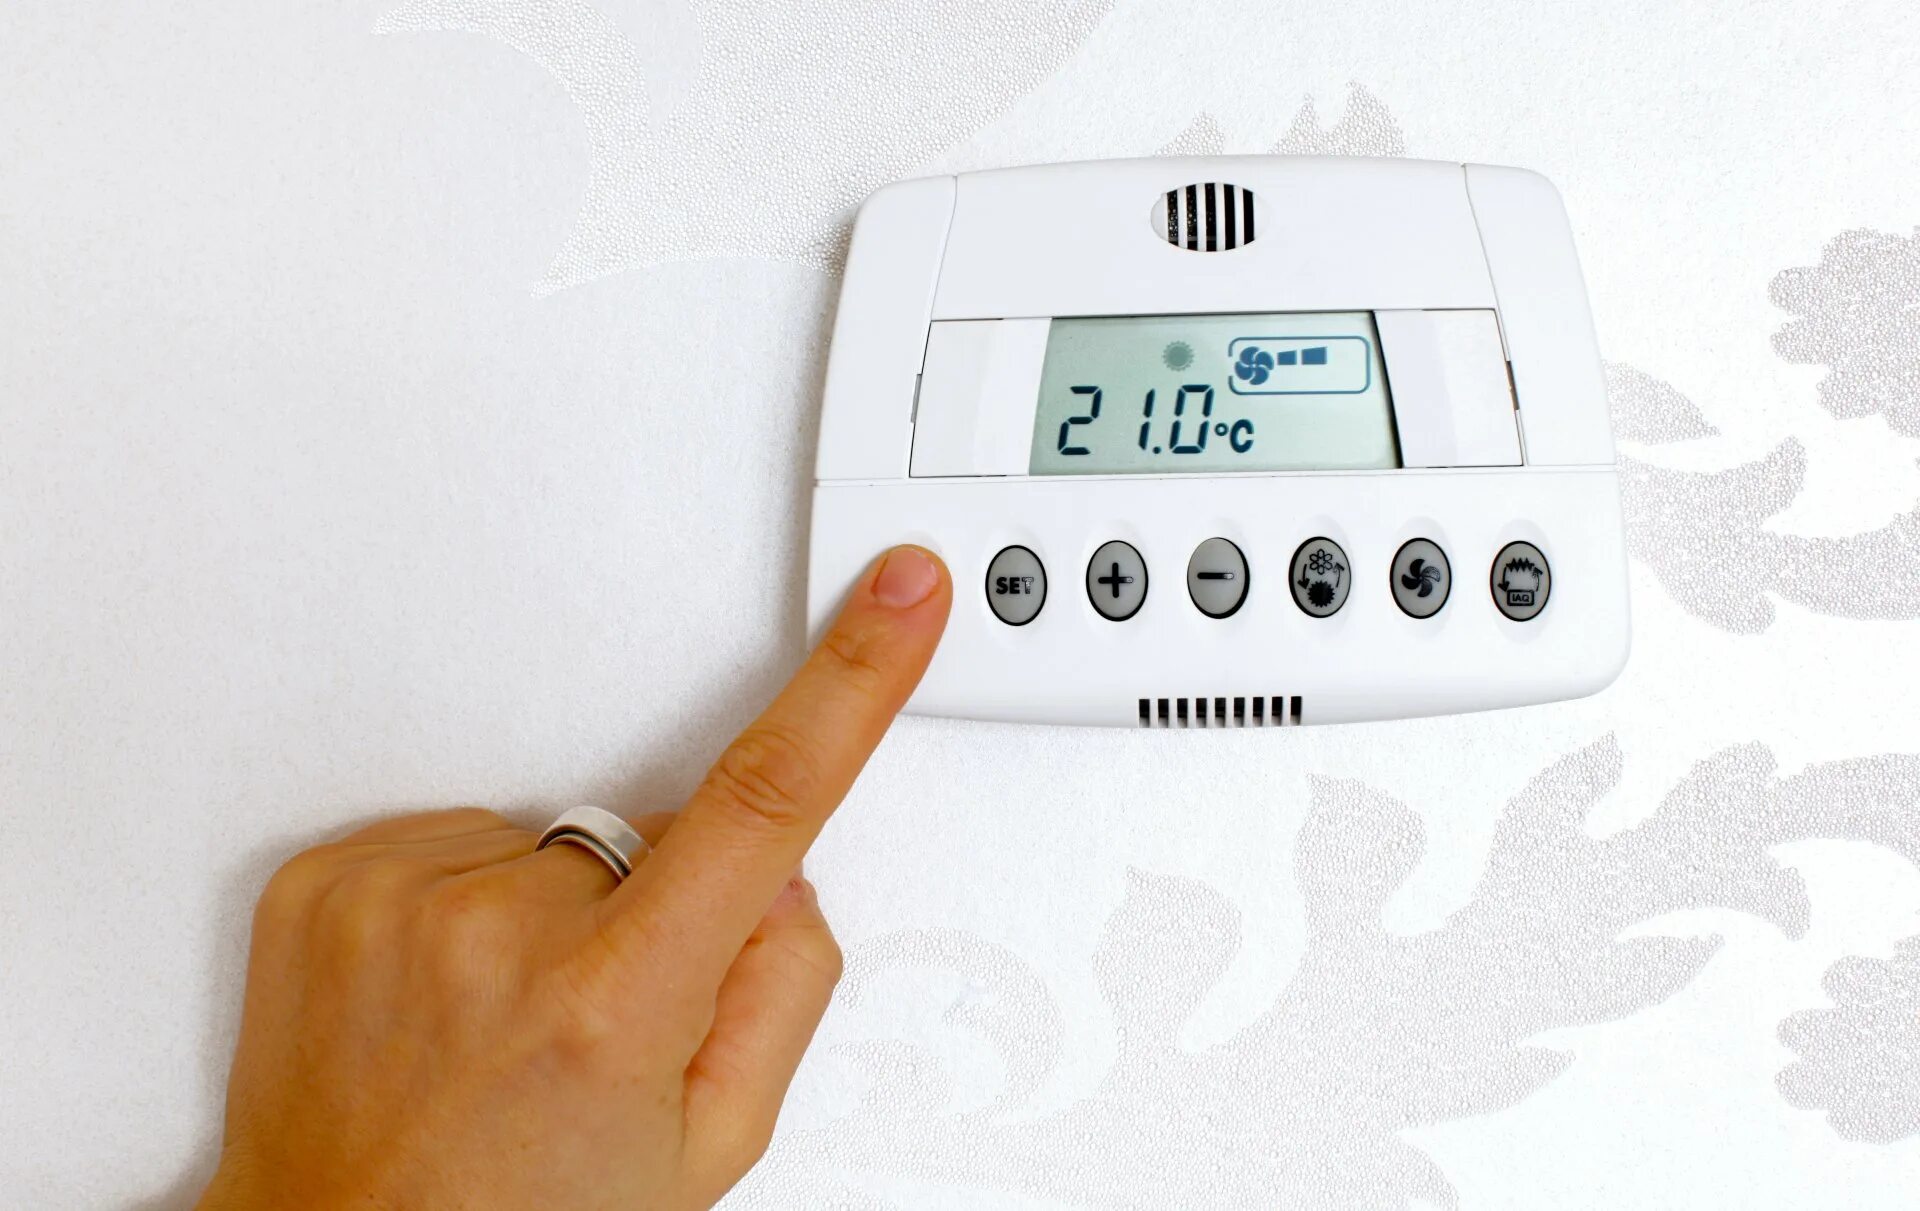 Установить температуру на 1. Термостат программируемый. Терморегулятор программируемый. Терморегулятор для микроклимата в помещениях. Терморегулятор для теплого пола на стене.